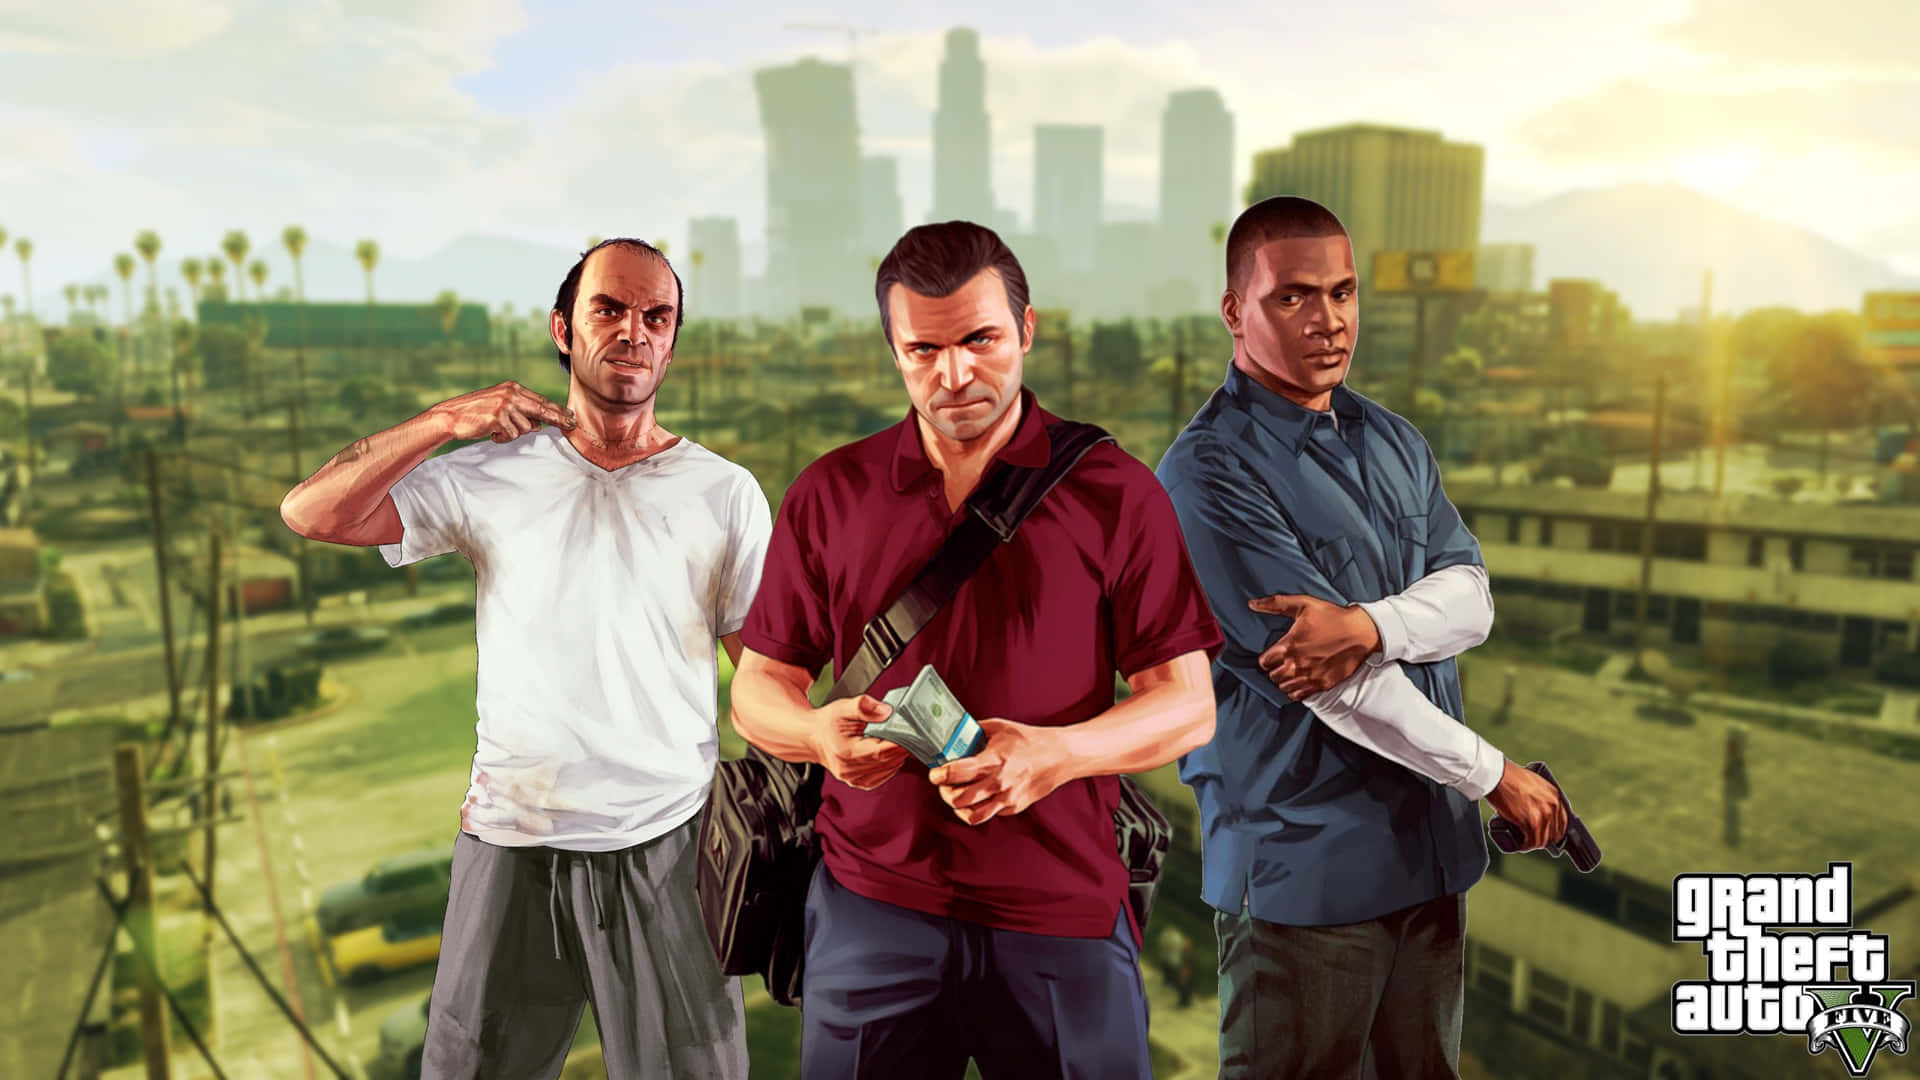 Klassiskagrand Theft Auto V-spelet, Nu I Enastående 2560x1440 Upplösning. Wallpaper